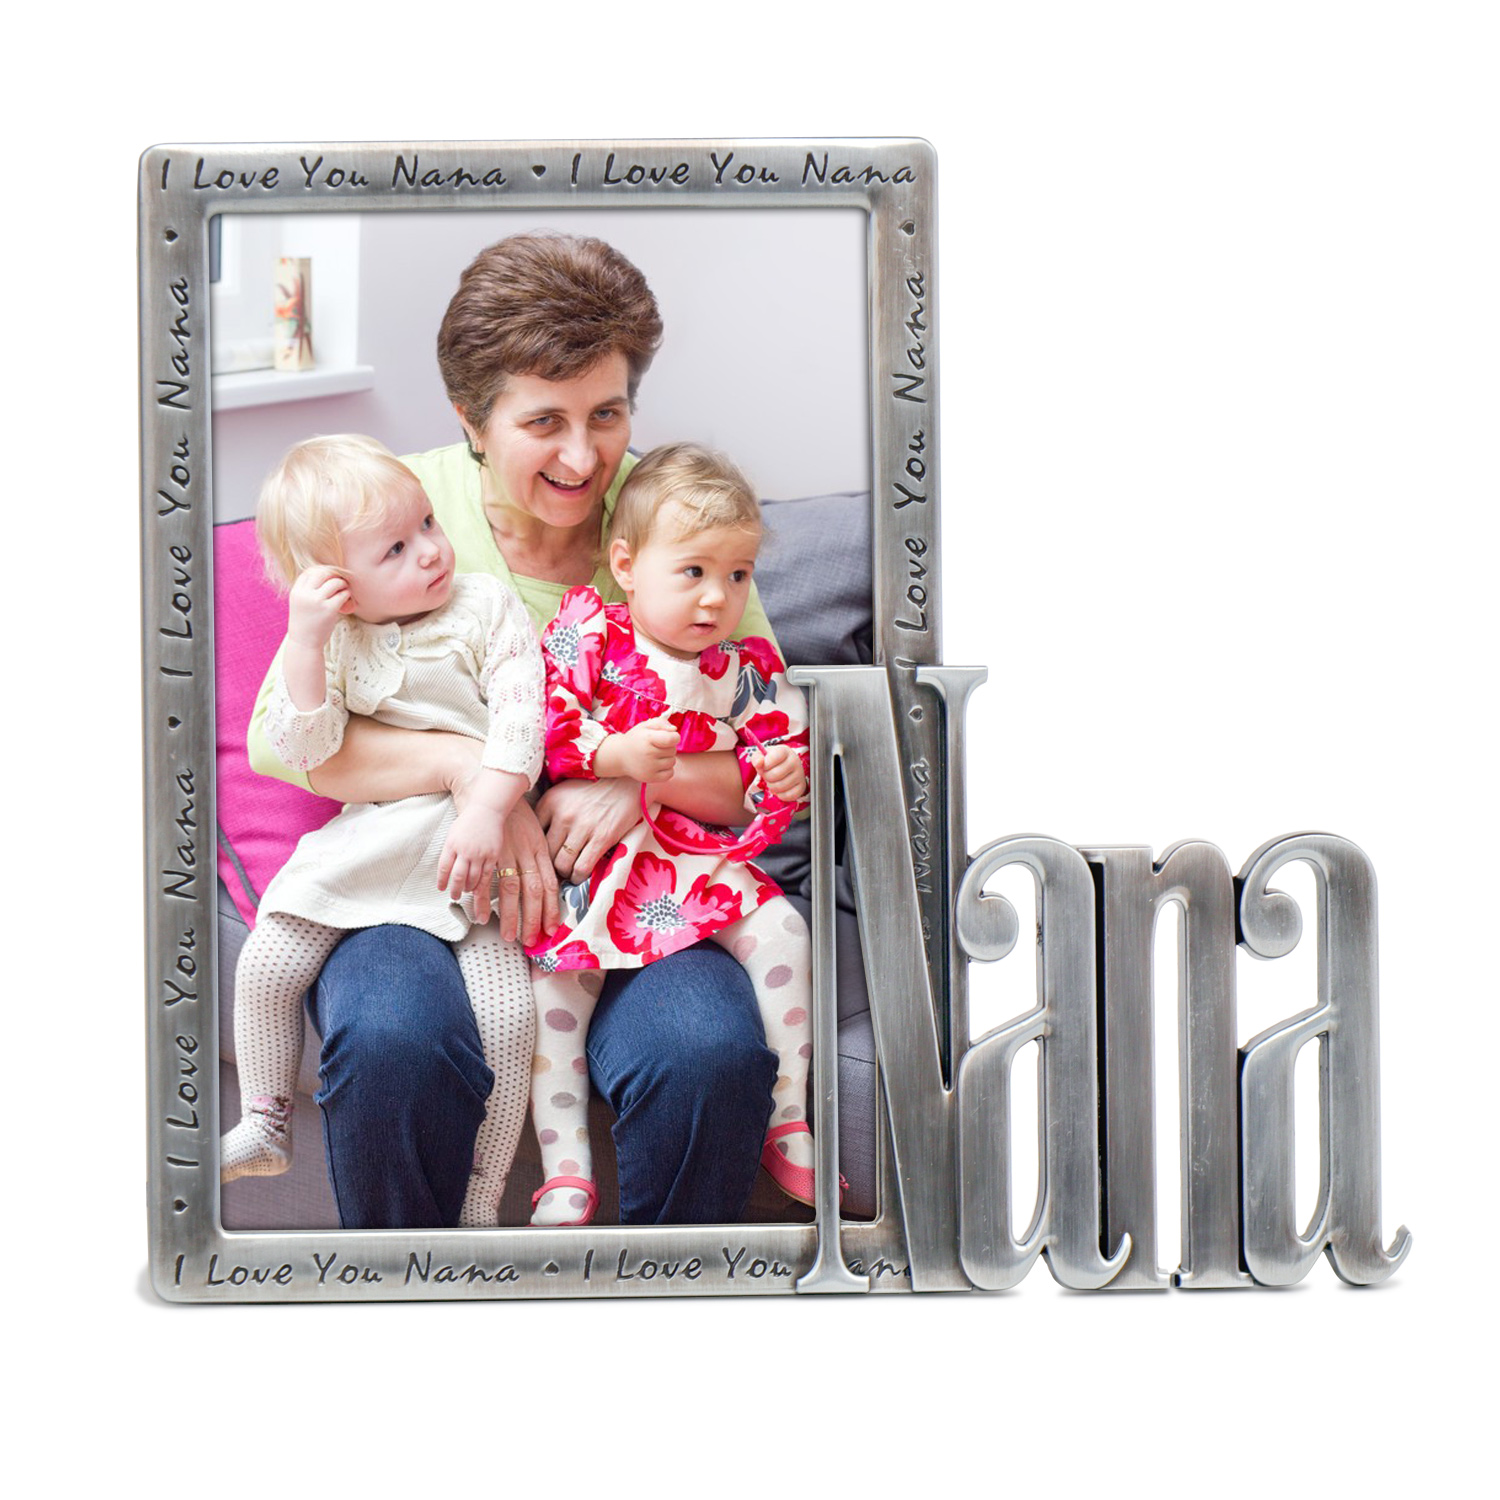 I LOVE YOU Nana photo frame